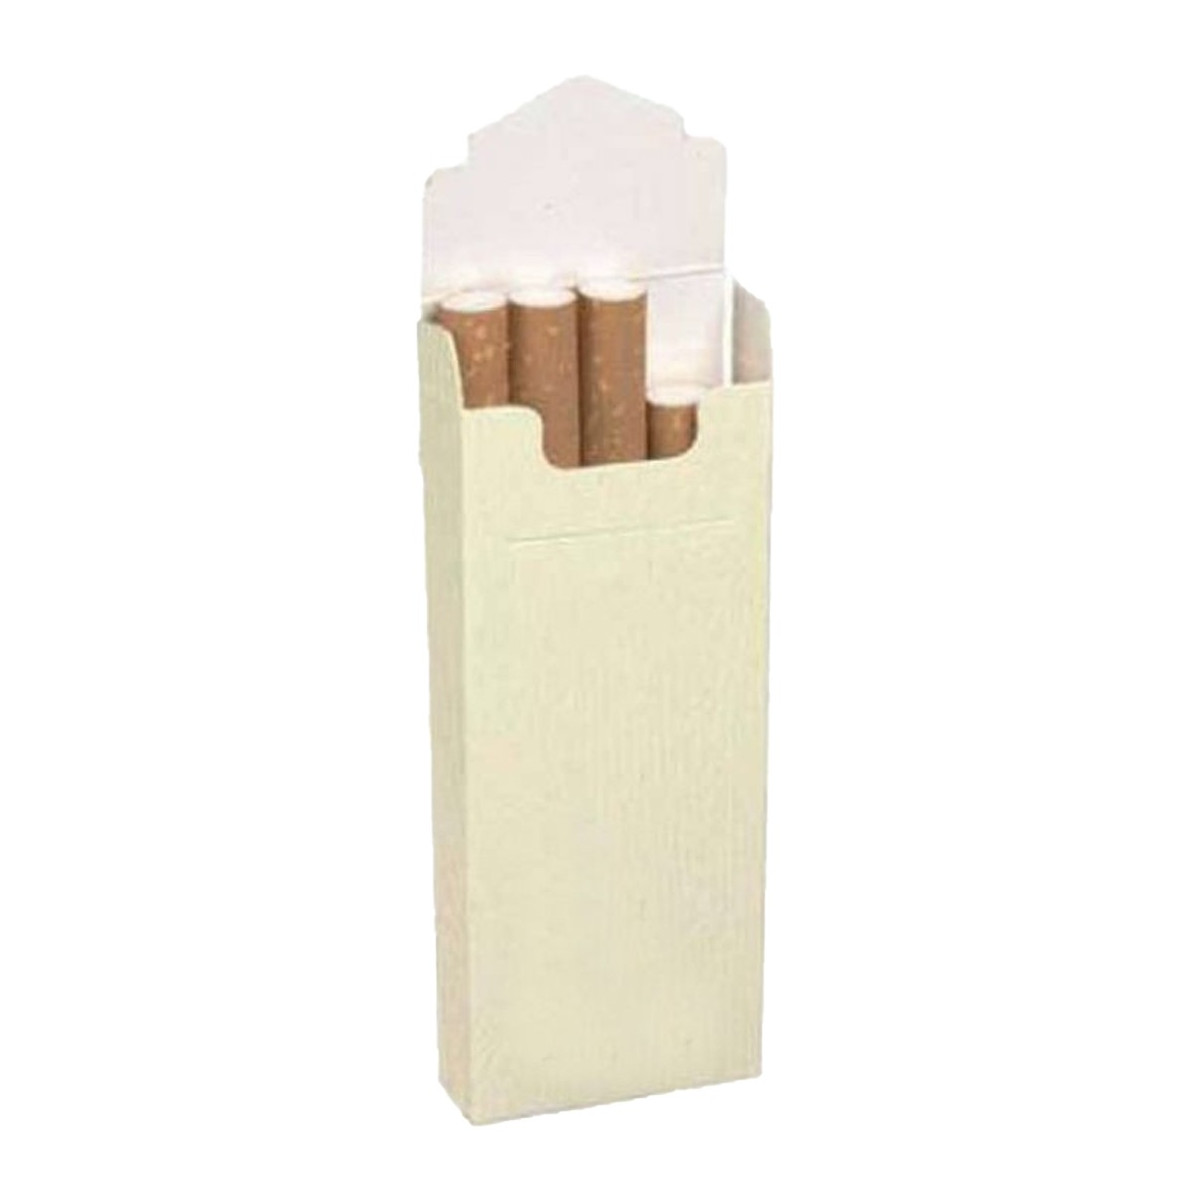 Cajetillas de tabaco para invitados